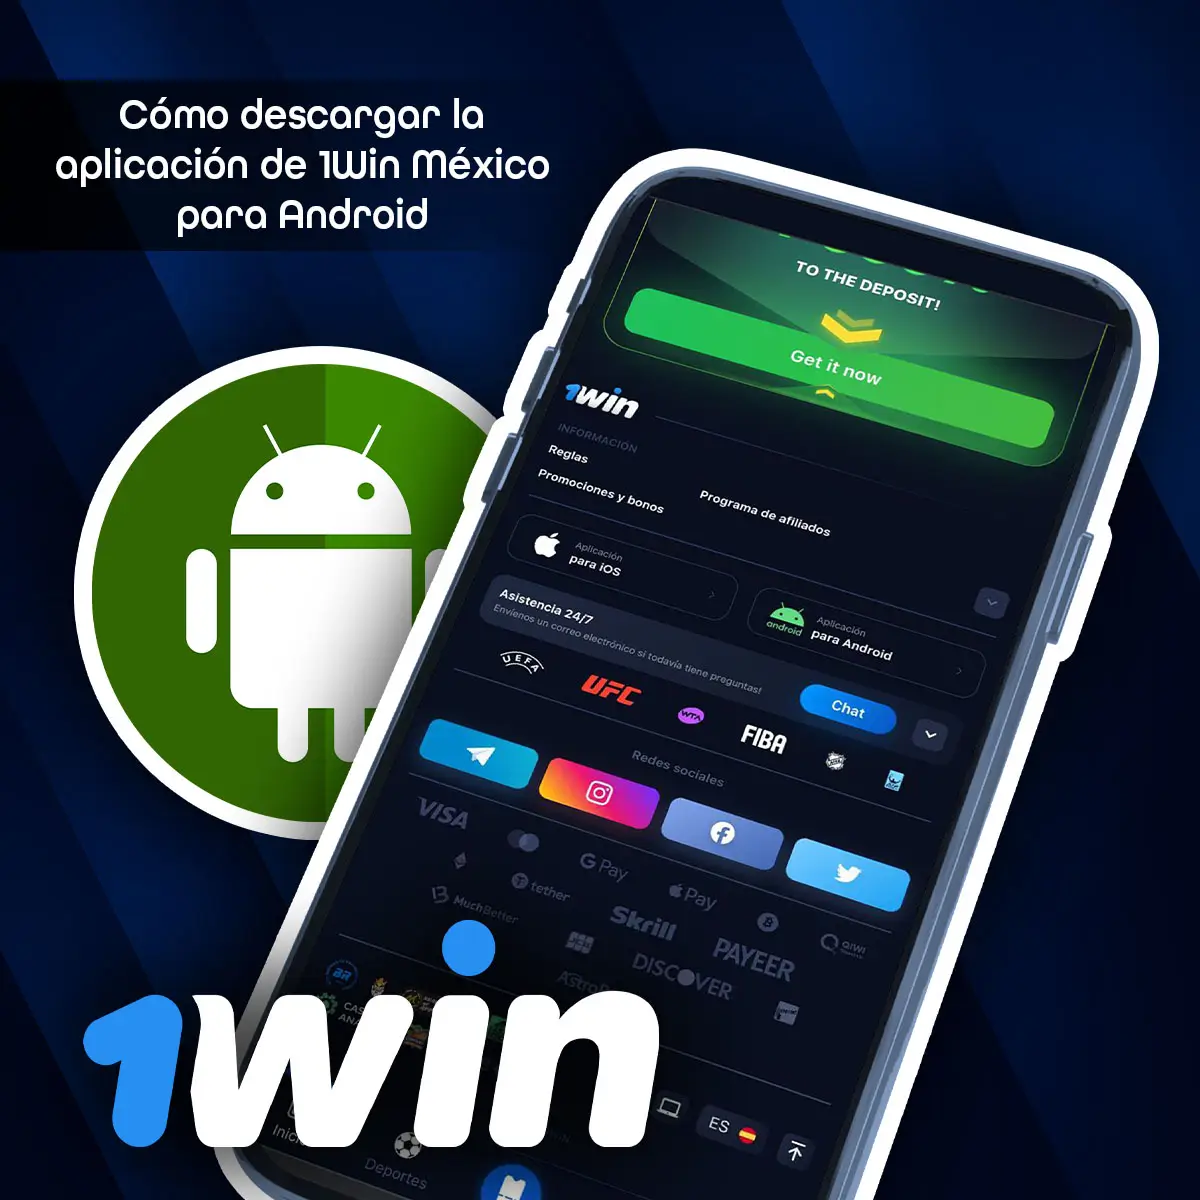 1Win app móvil para Android